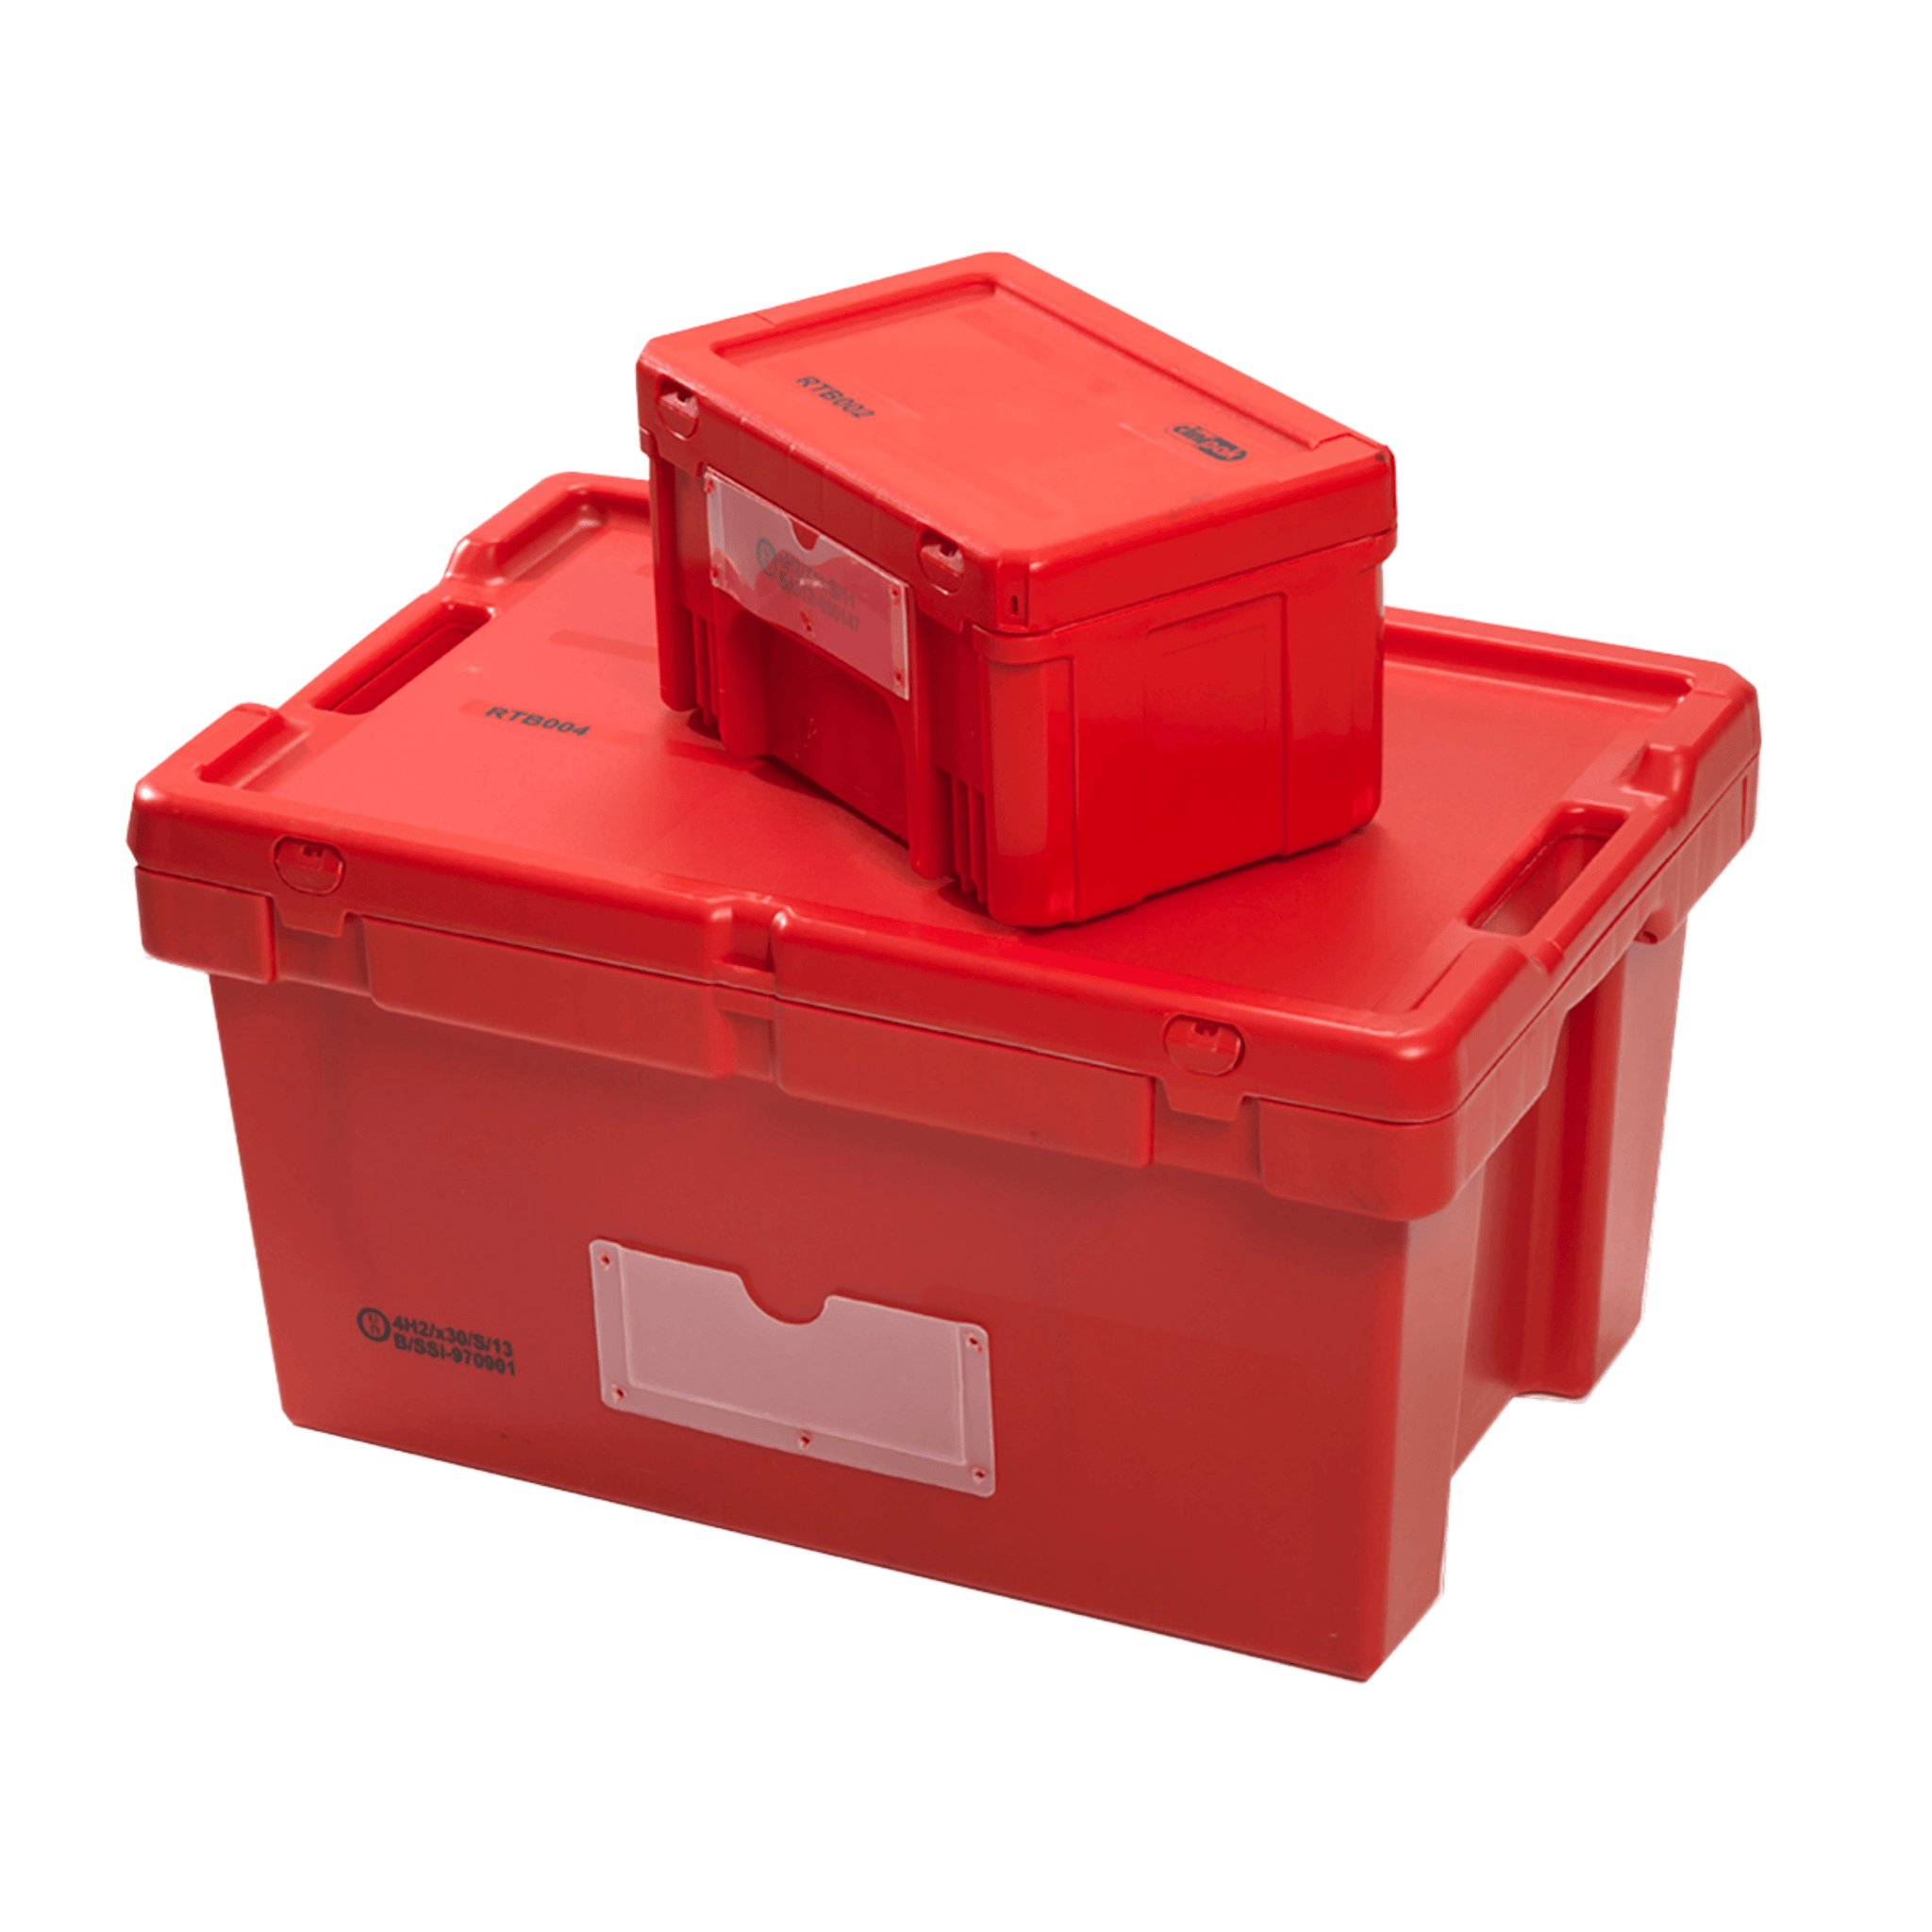 Transport Box- Red, 1.4 kg, 400 X 300 X 220 mm